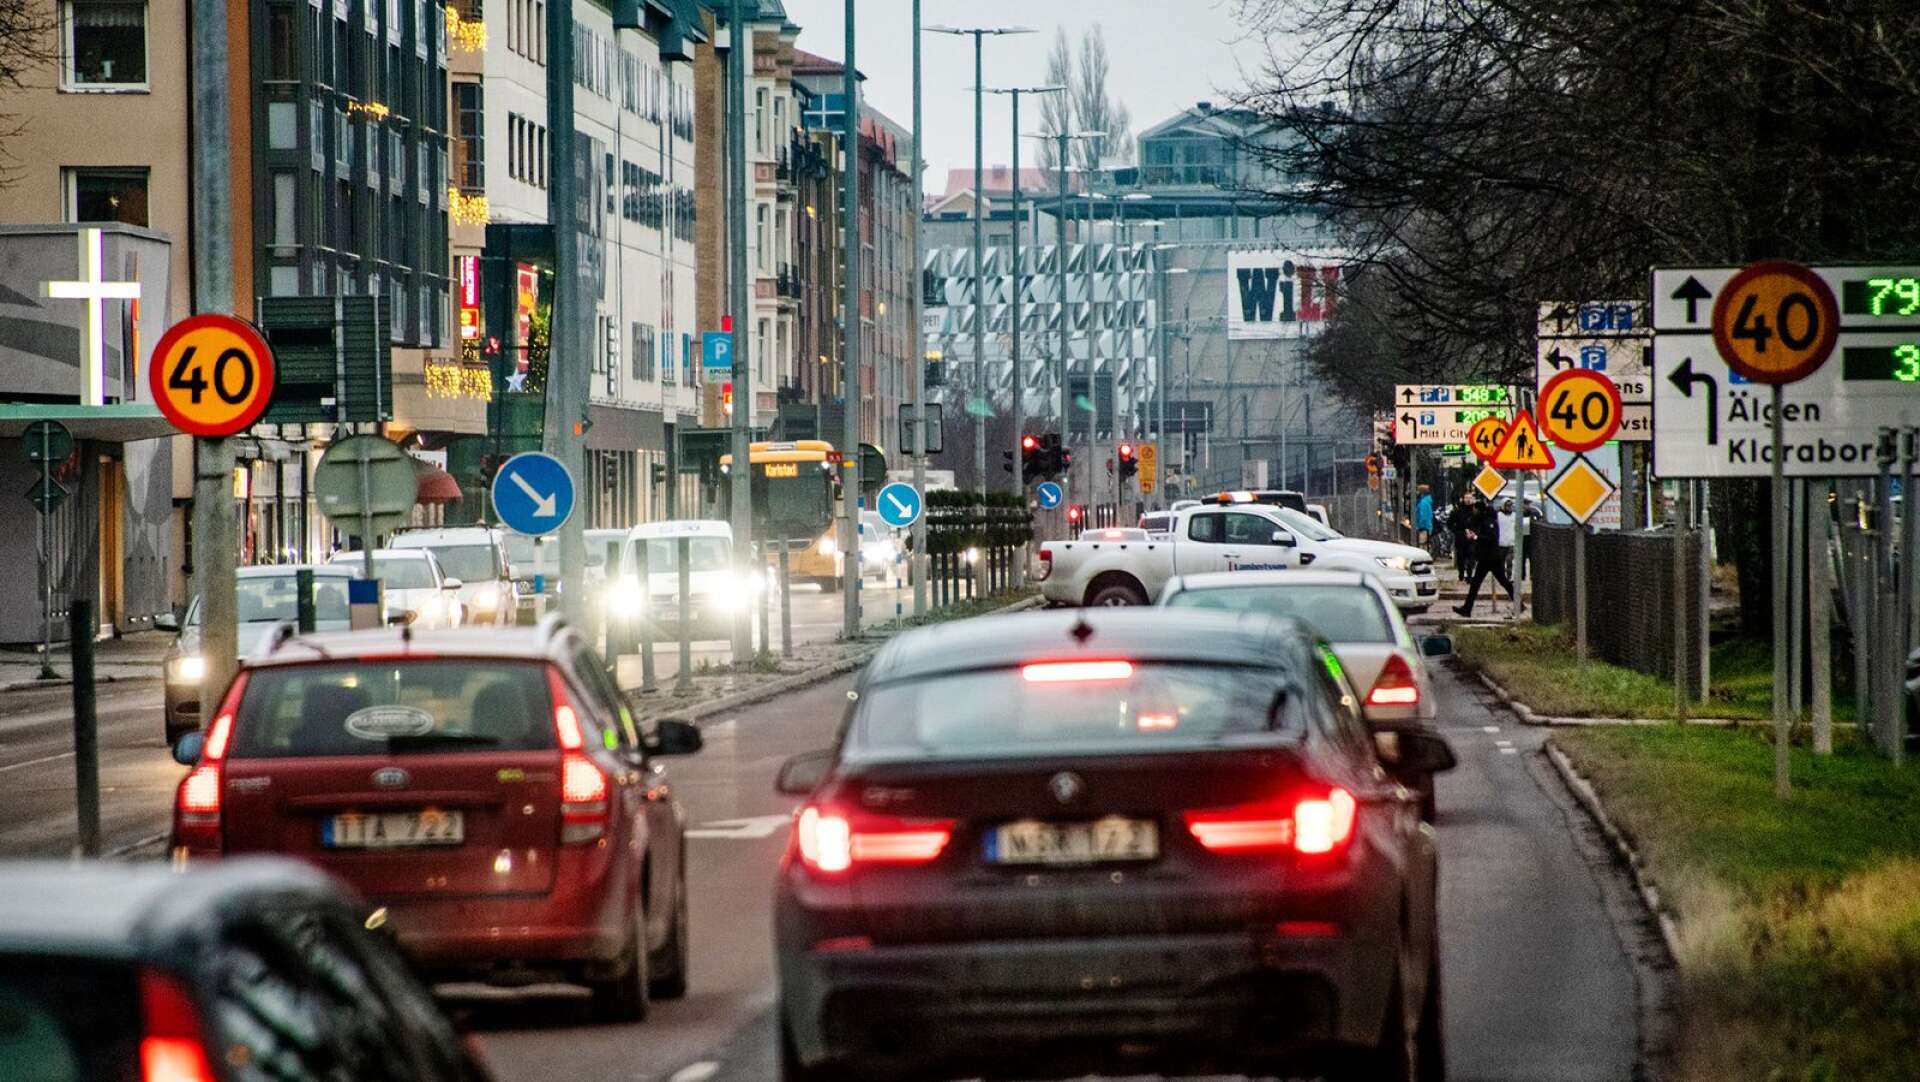 Nya resecentrum riskerar att göra Karlstads stadskärna ännu mer svåråtkomlig, anser insändarskribenten.